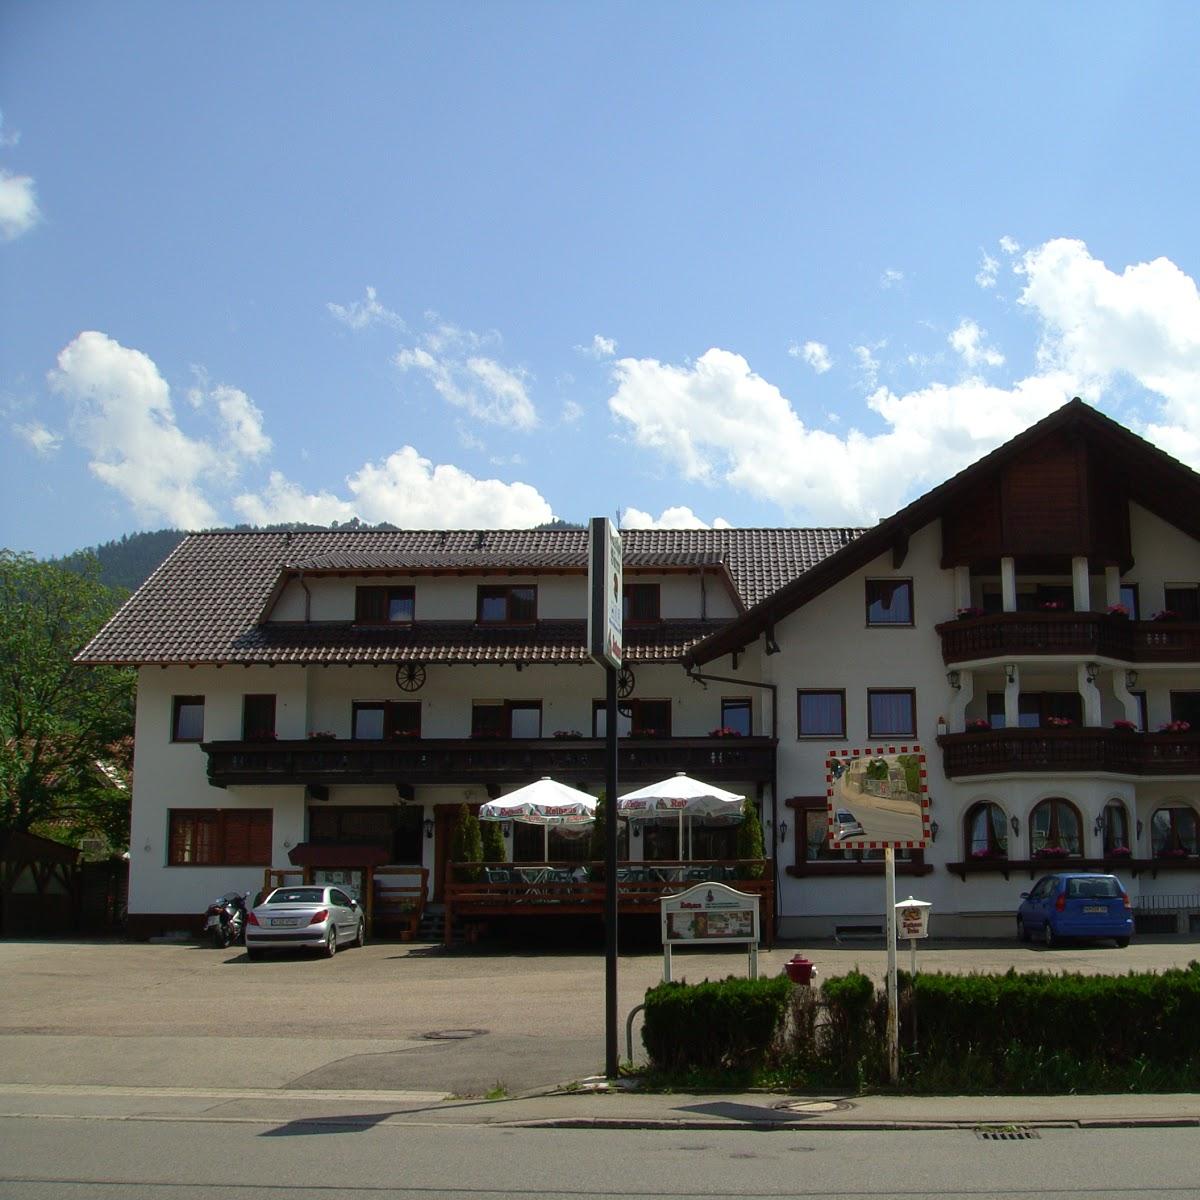 Restaurant "Gruppenhotel Schwarzwald" in Winden im Elztal